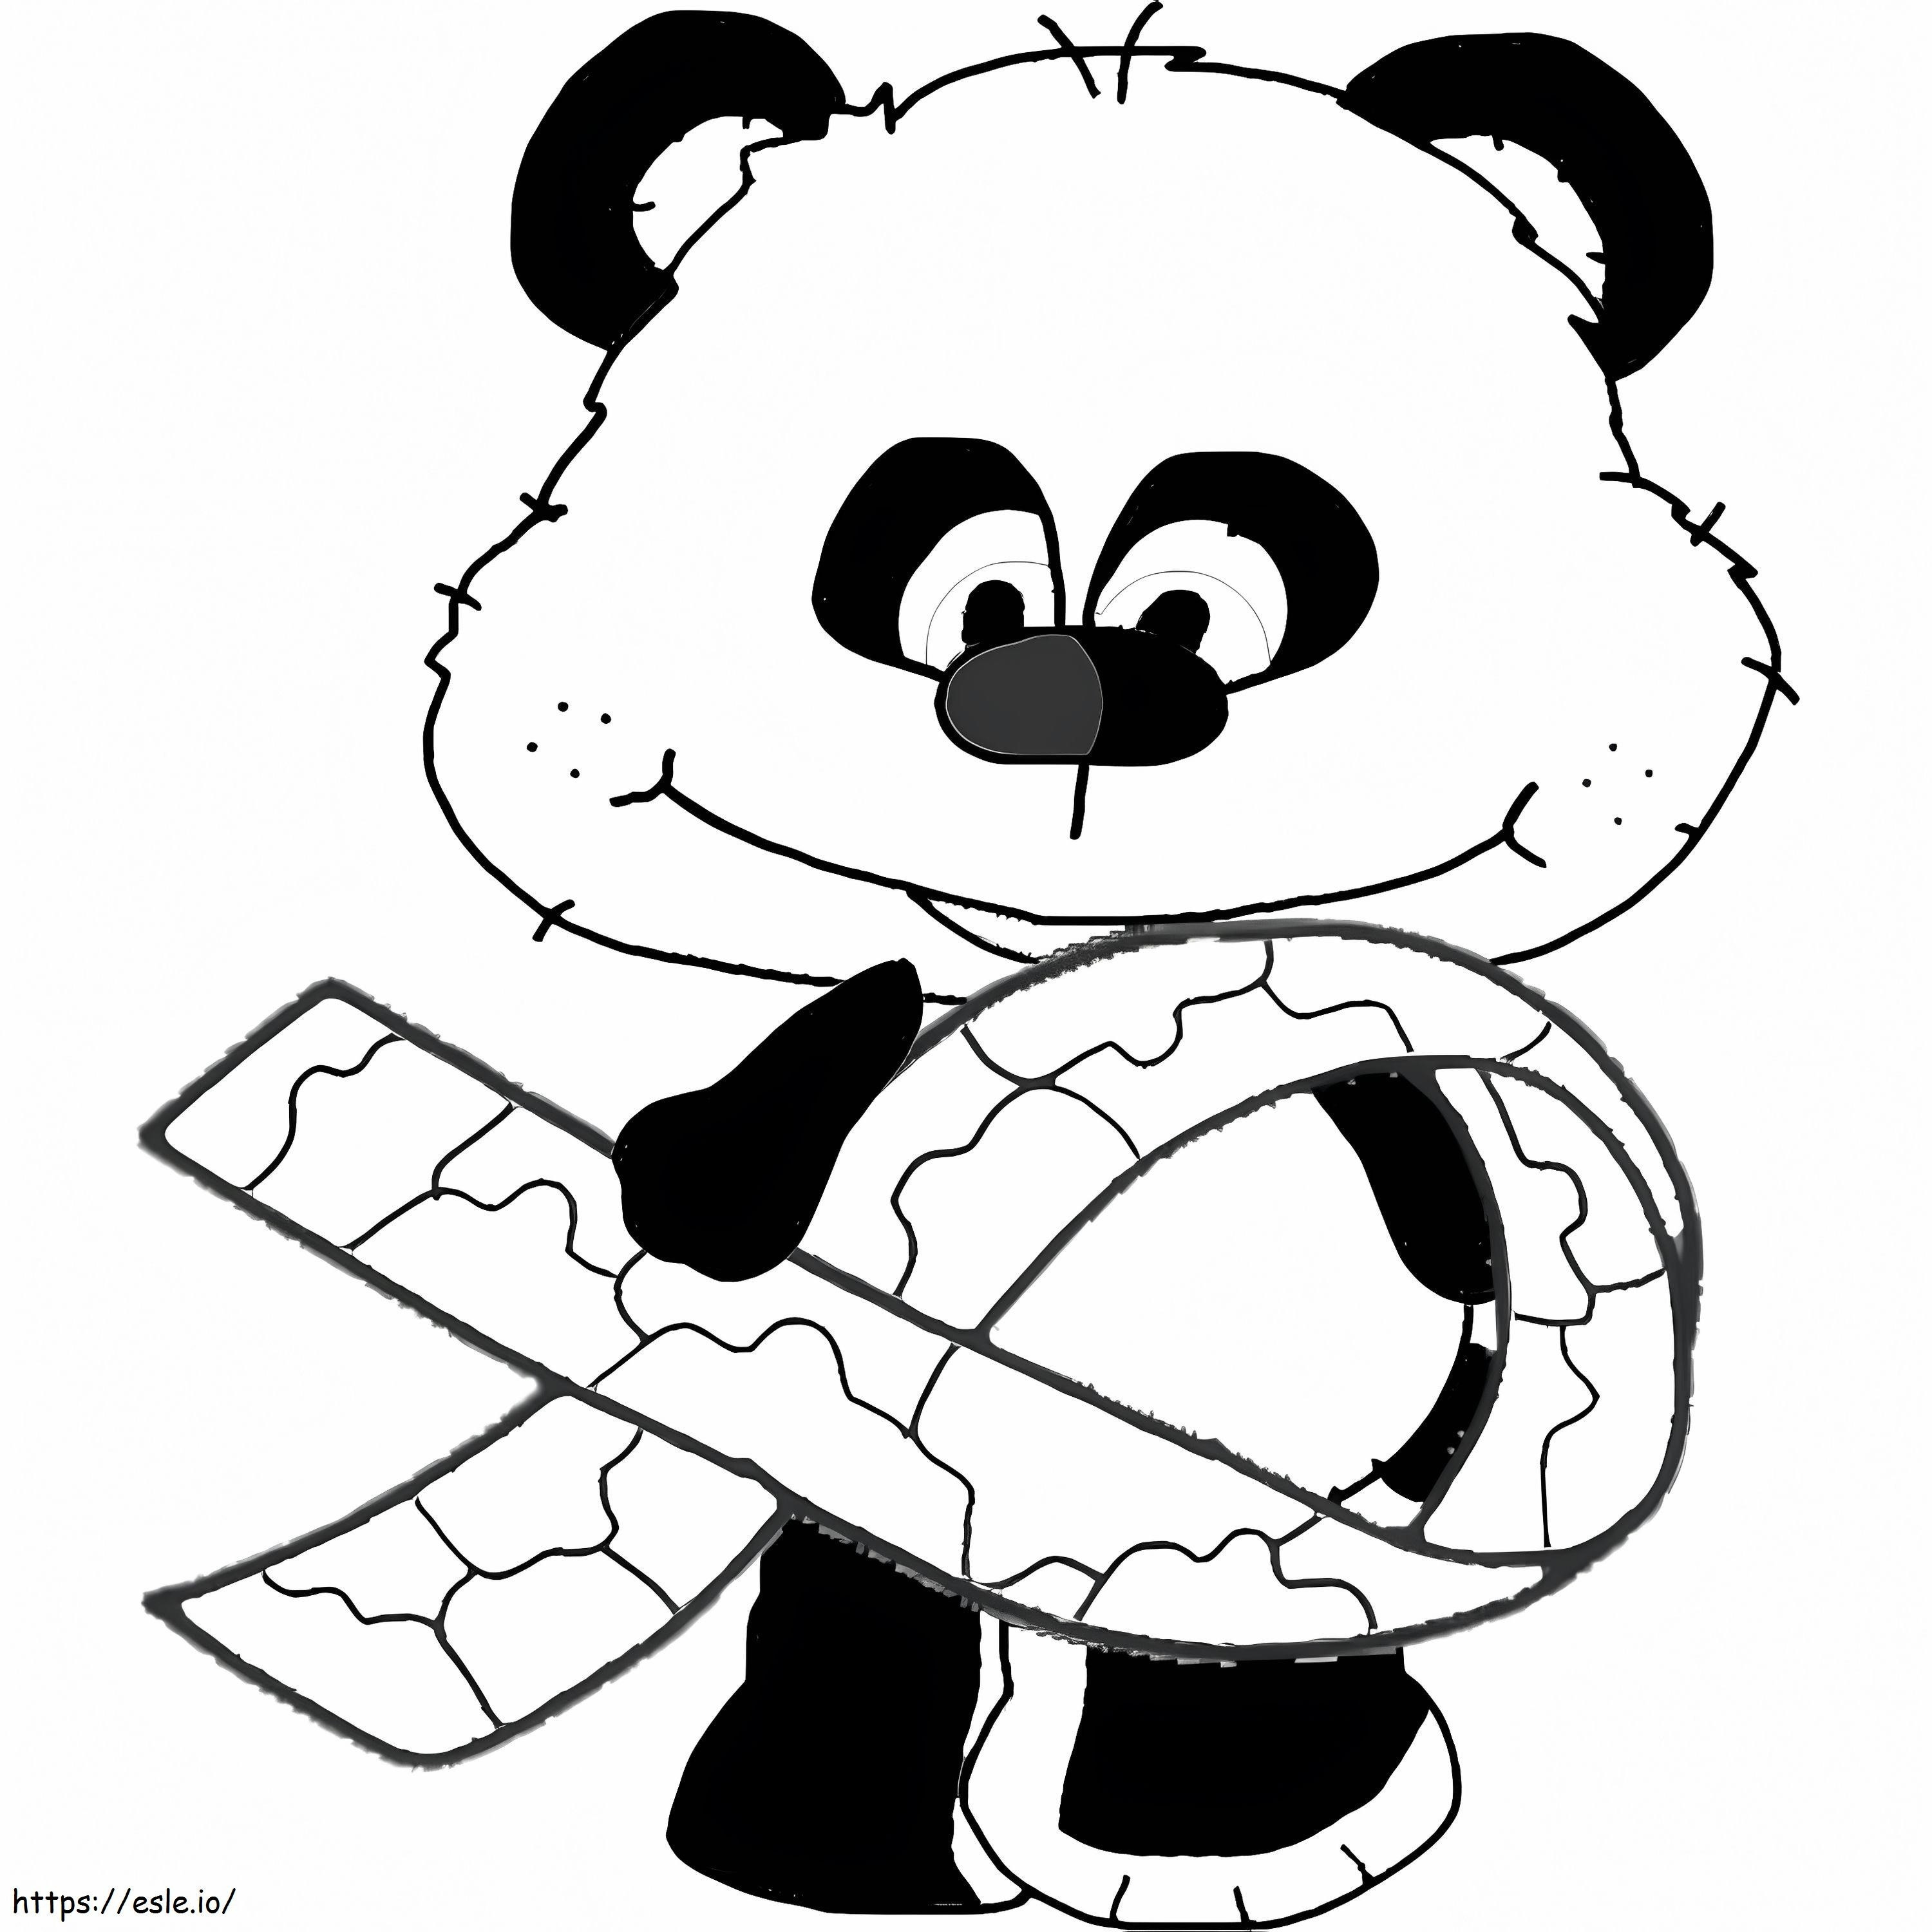 Otizm Farkındalık Kurdeleli Panda boyama